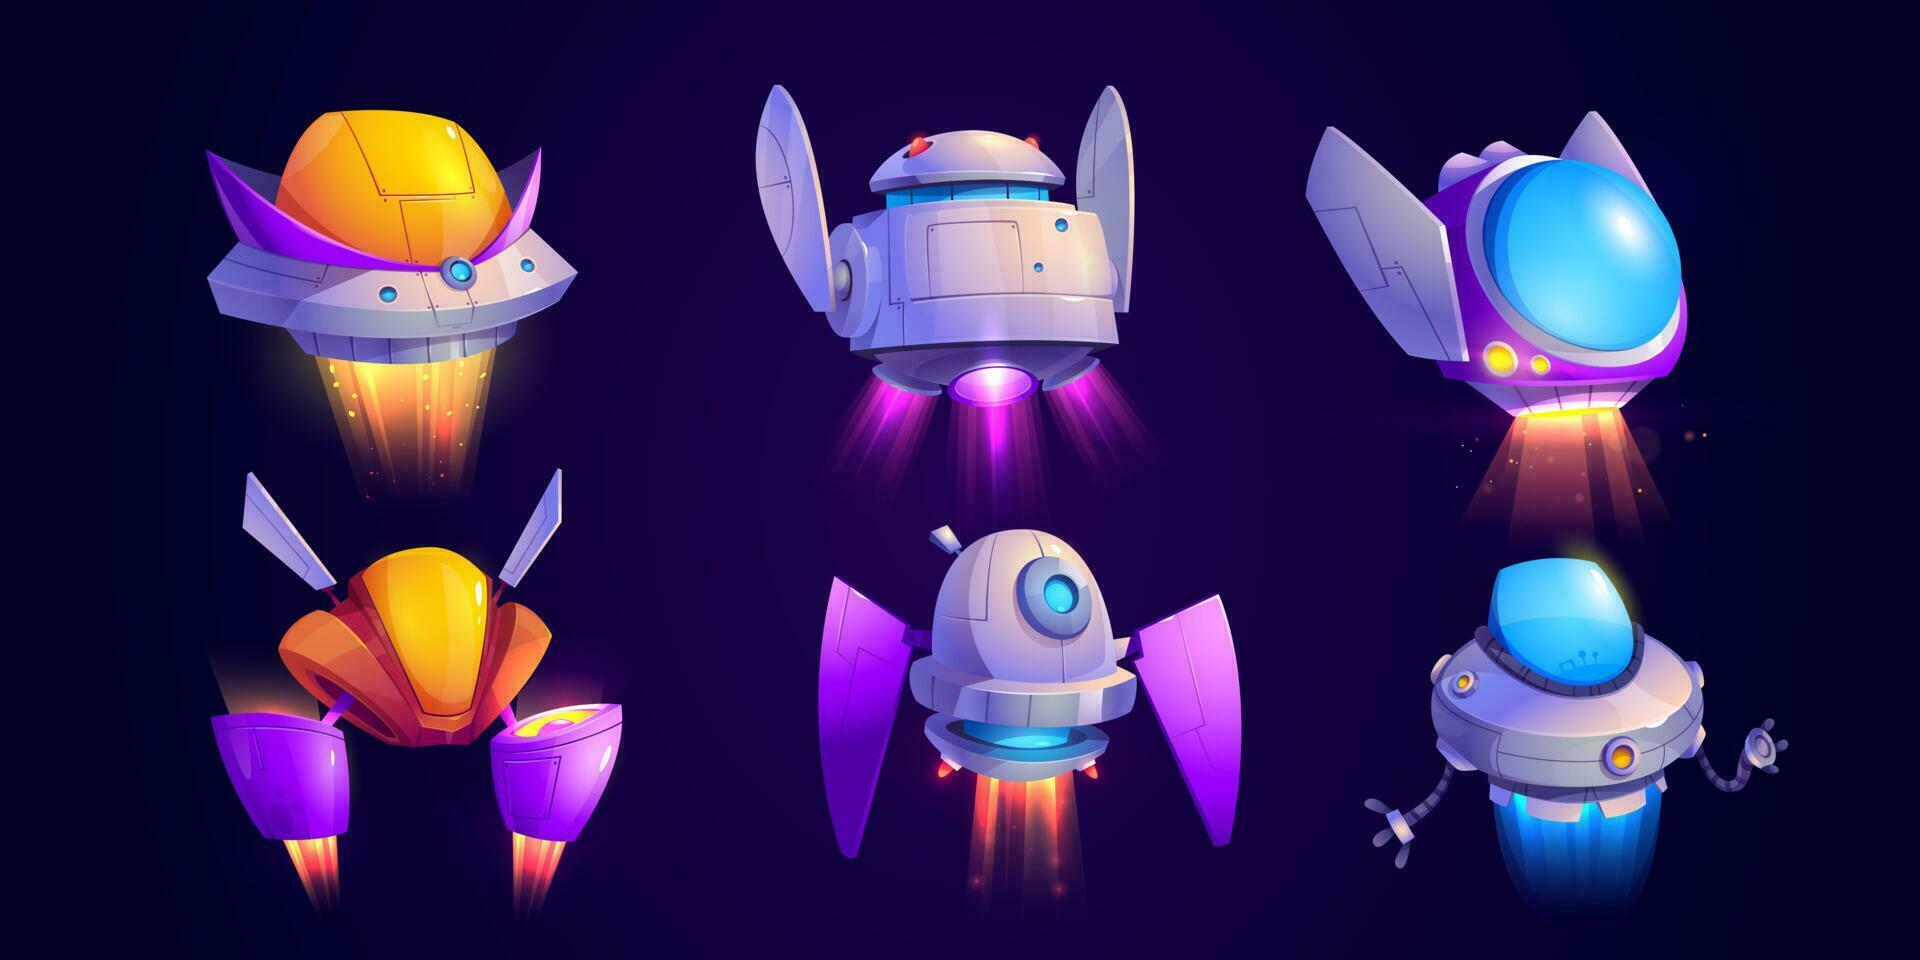 Alien space ship cartoon game vector icon set